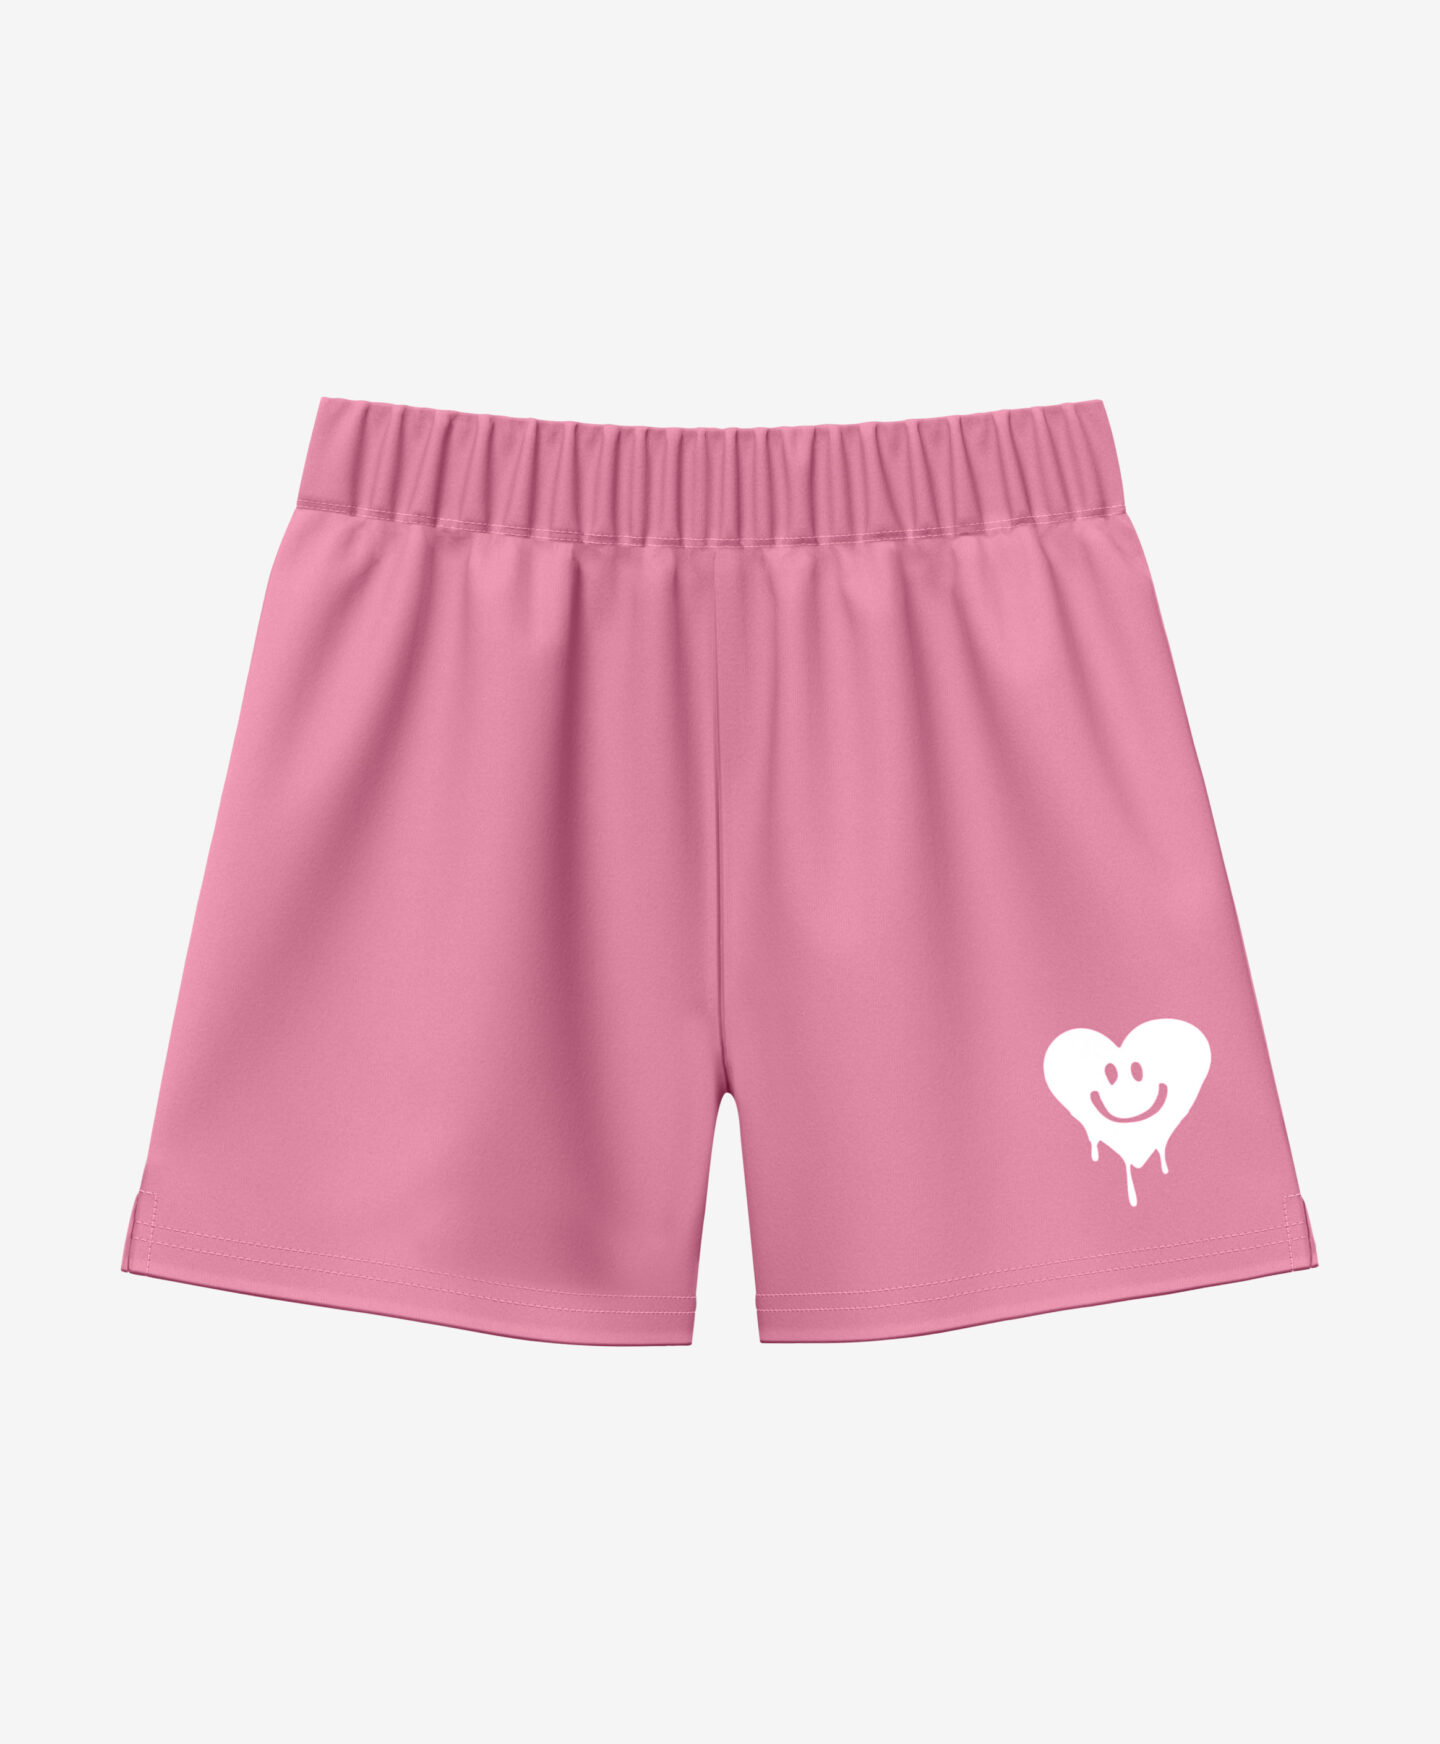 shorts per ragazza rosa in cotone